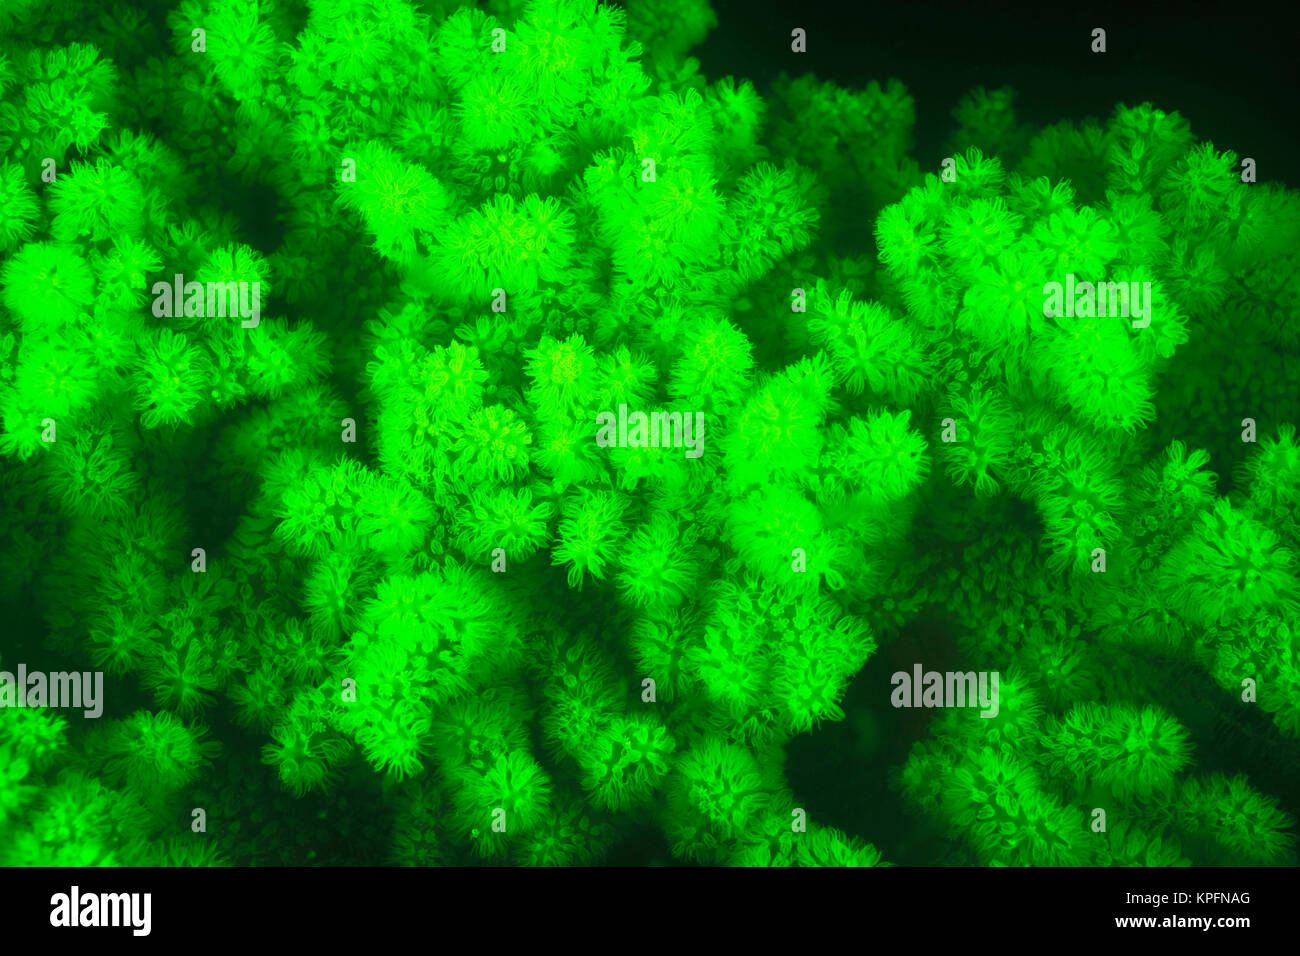 Producen fluorescencia natural submarino de corales duros (Acropora sp.), capturado mediante filtros de barrera de bloqueo UV especial, buceo nocturno cerca de la aldea, Api Illi Lewolin Isla, Selat Boleng Strait, Indonesia Foto de stock